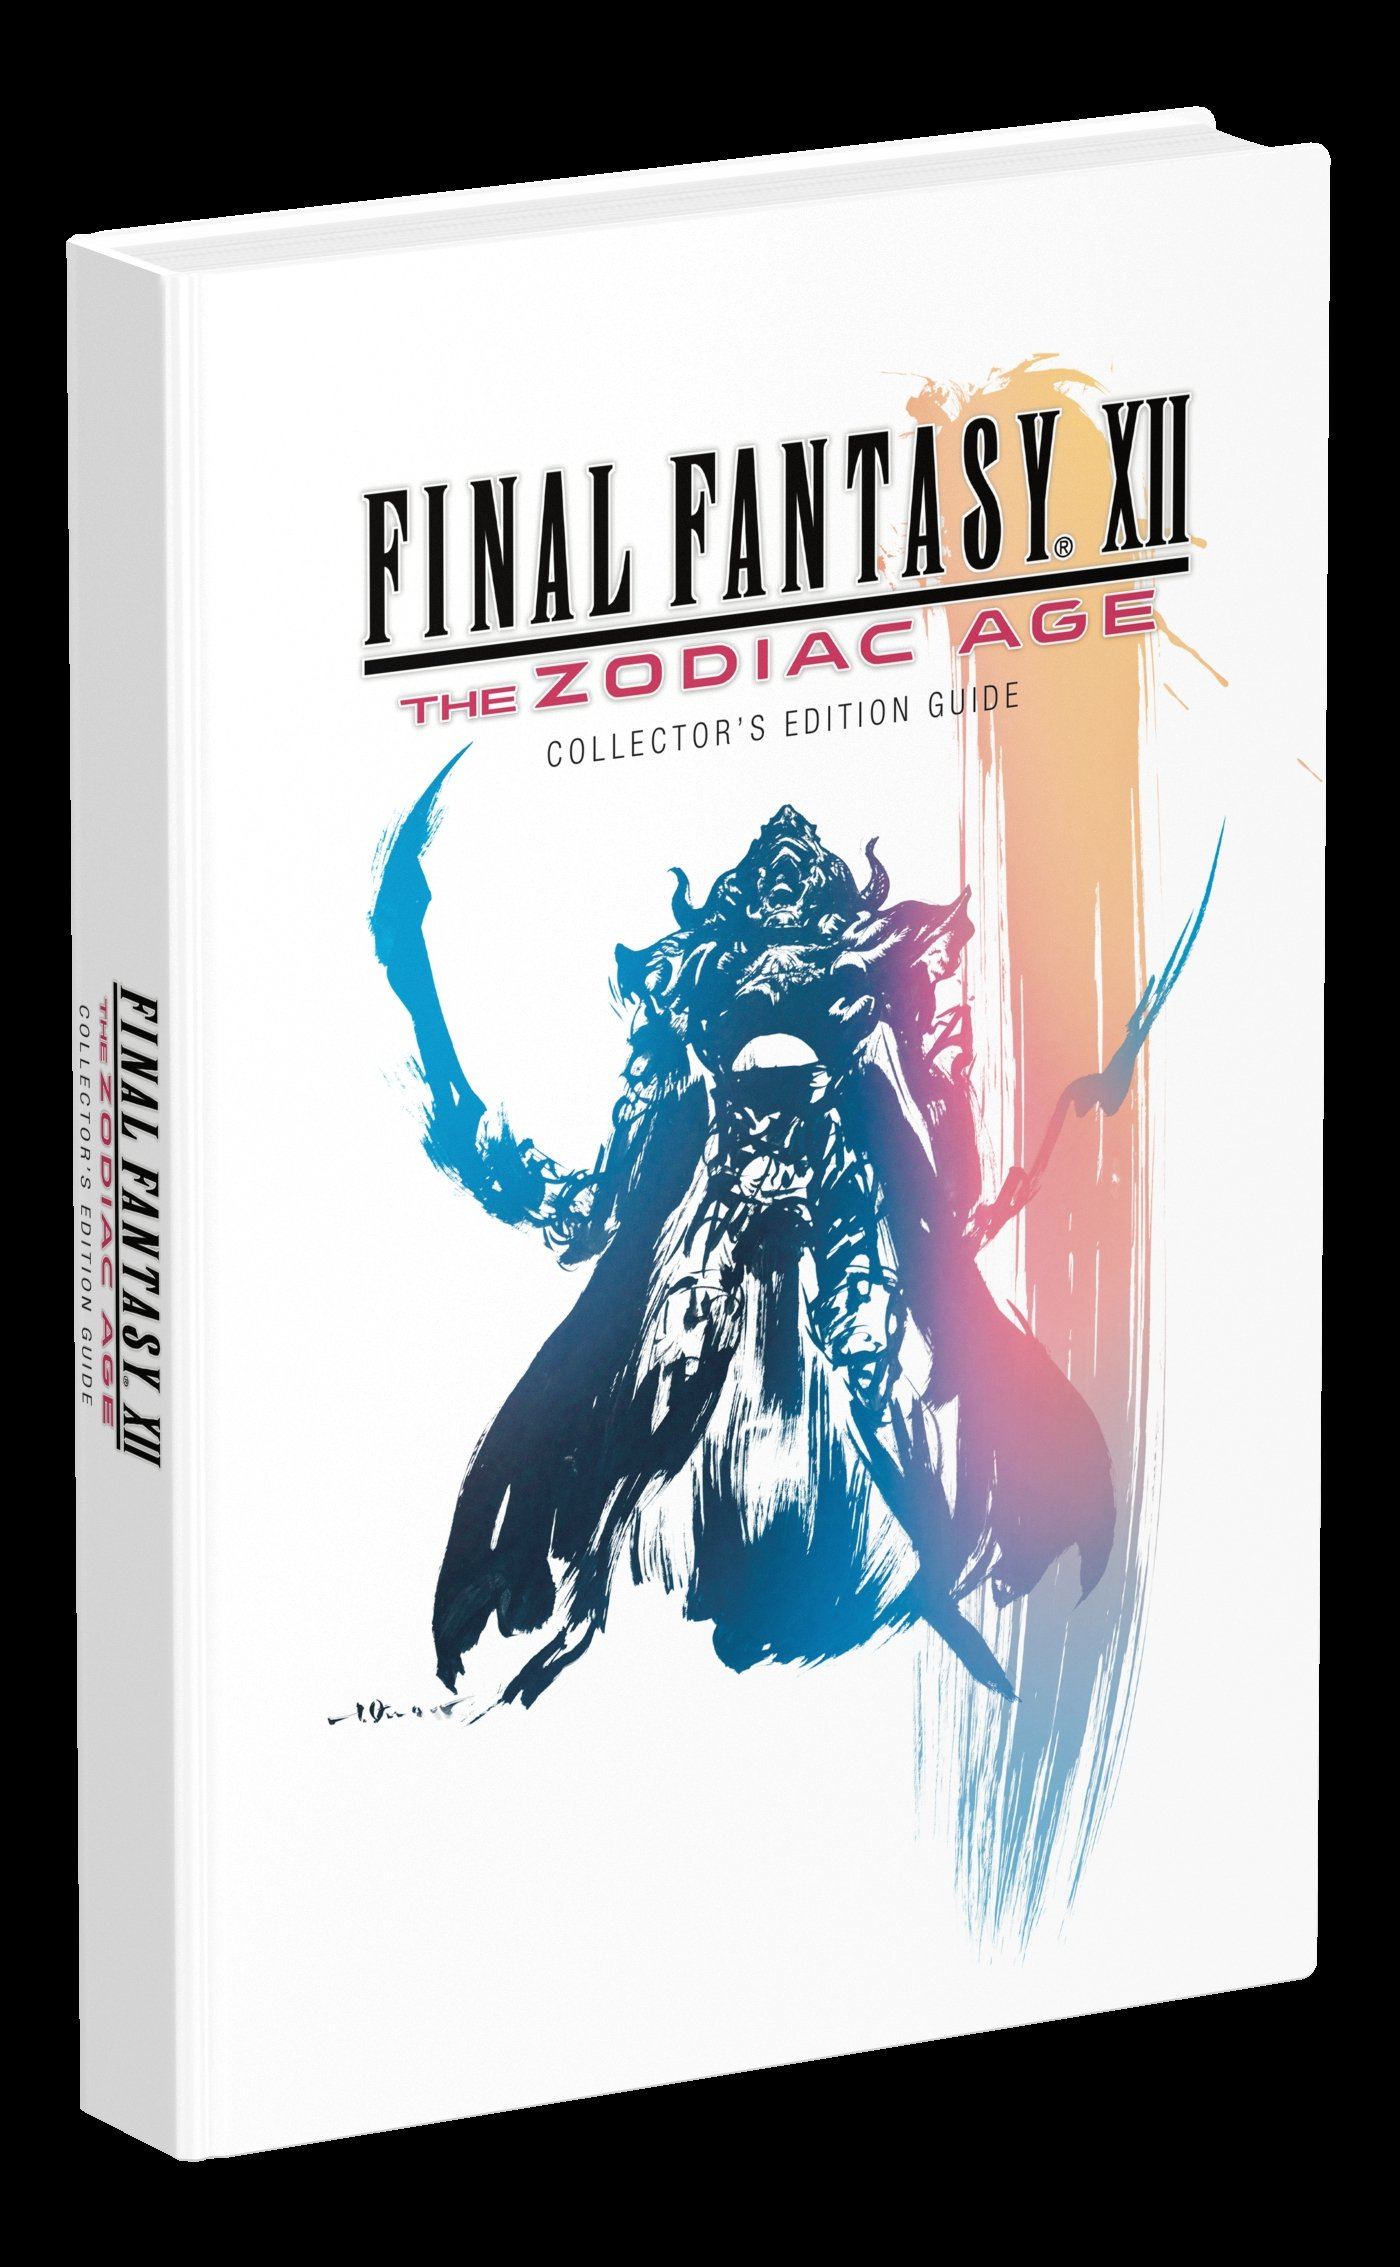 Final Fantasy 12 Zodiac Age Guide Book